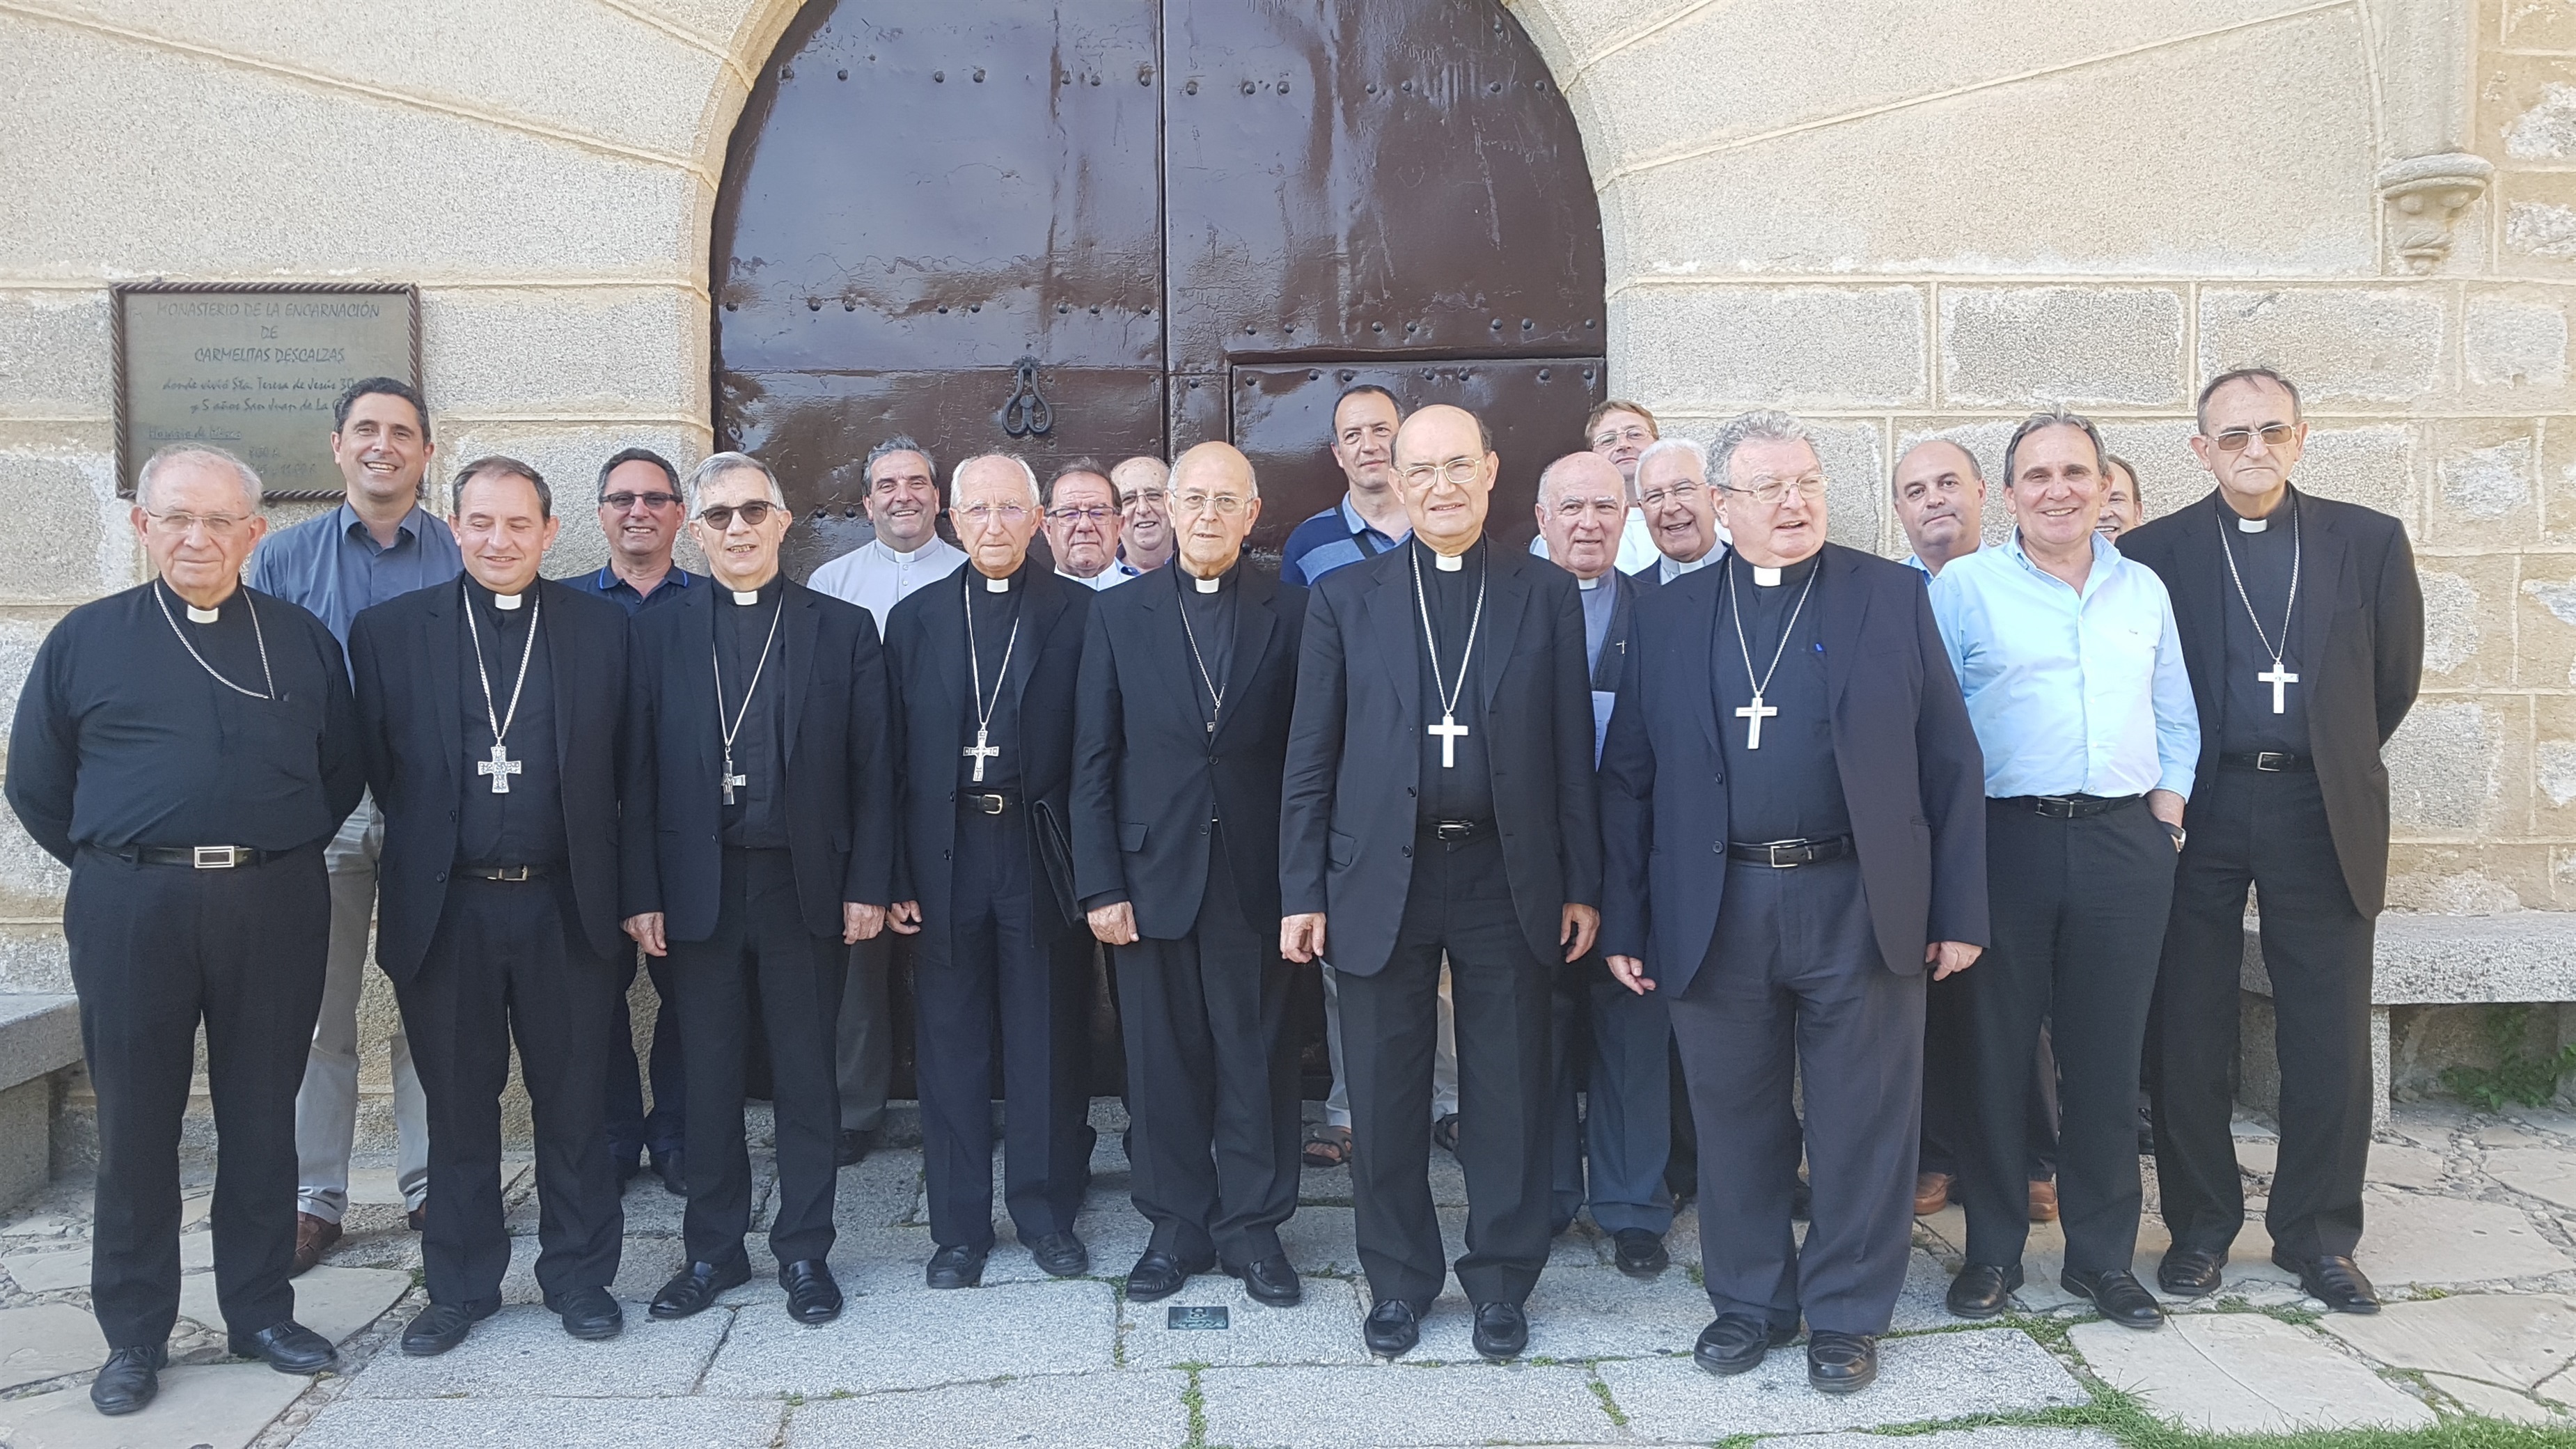 Obispos de Castilla y León durante una reunión en Ávila. EP